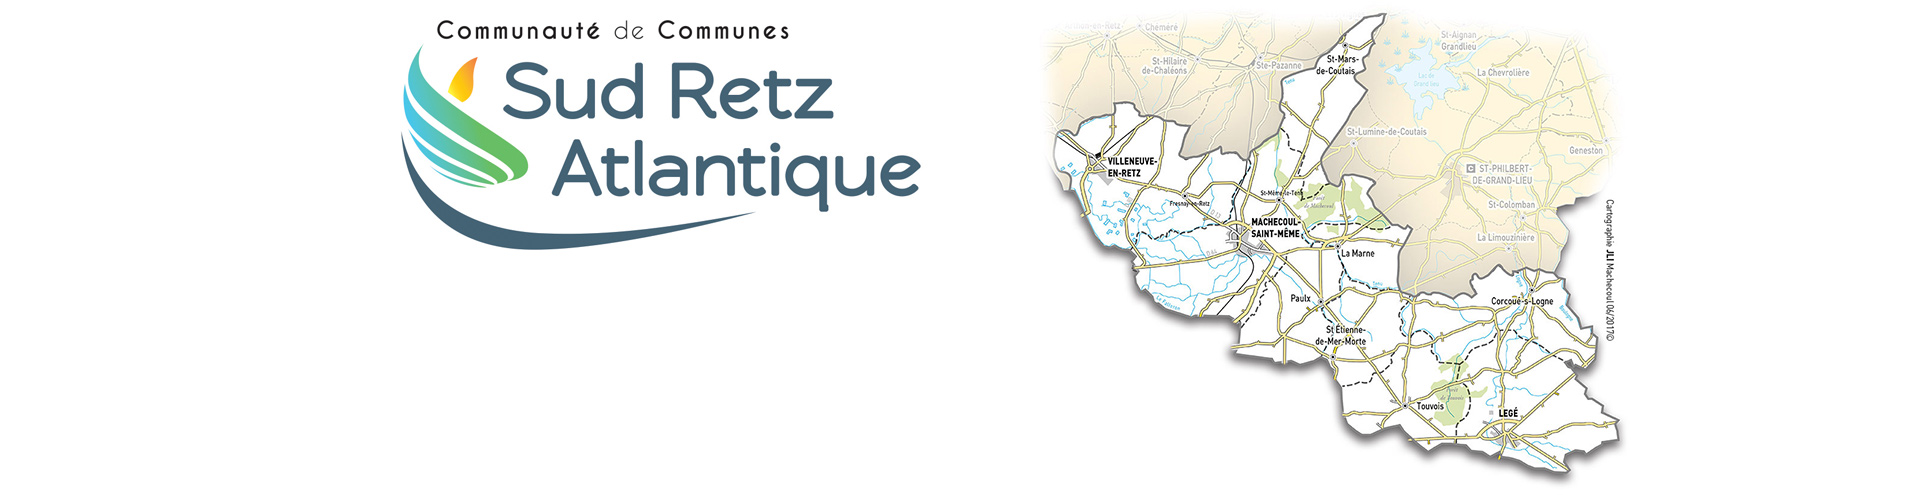 Sud Retz Atlantique 44 - Communauté de Communes